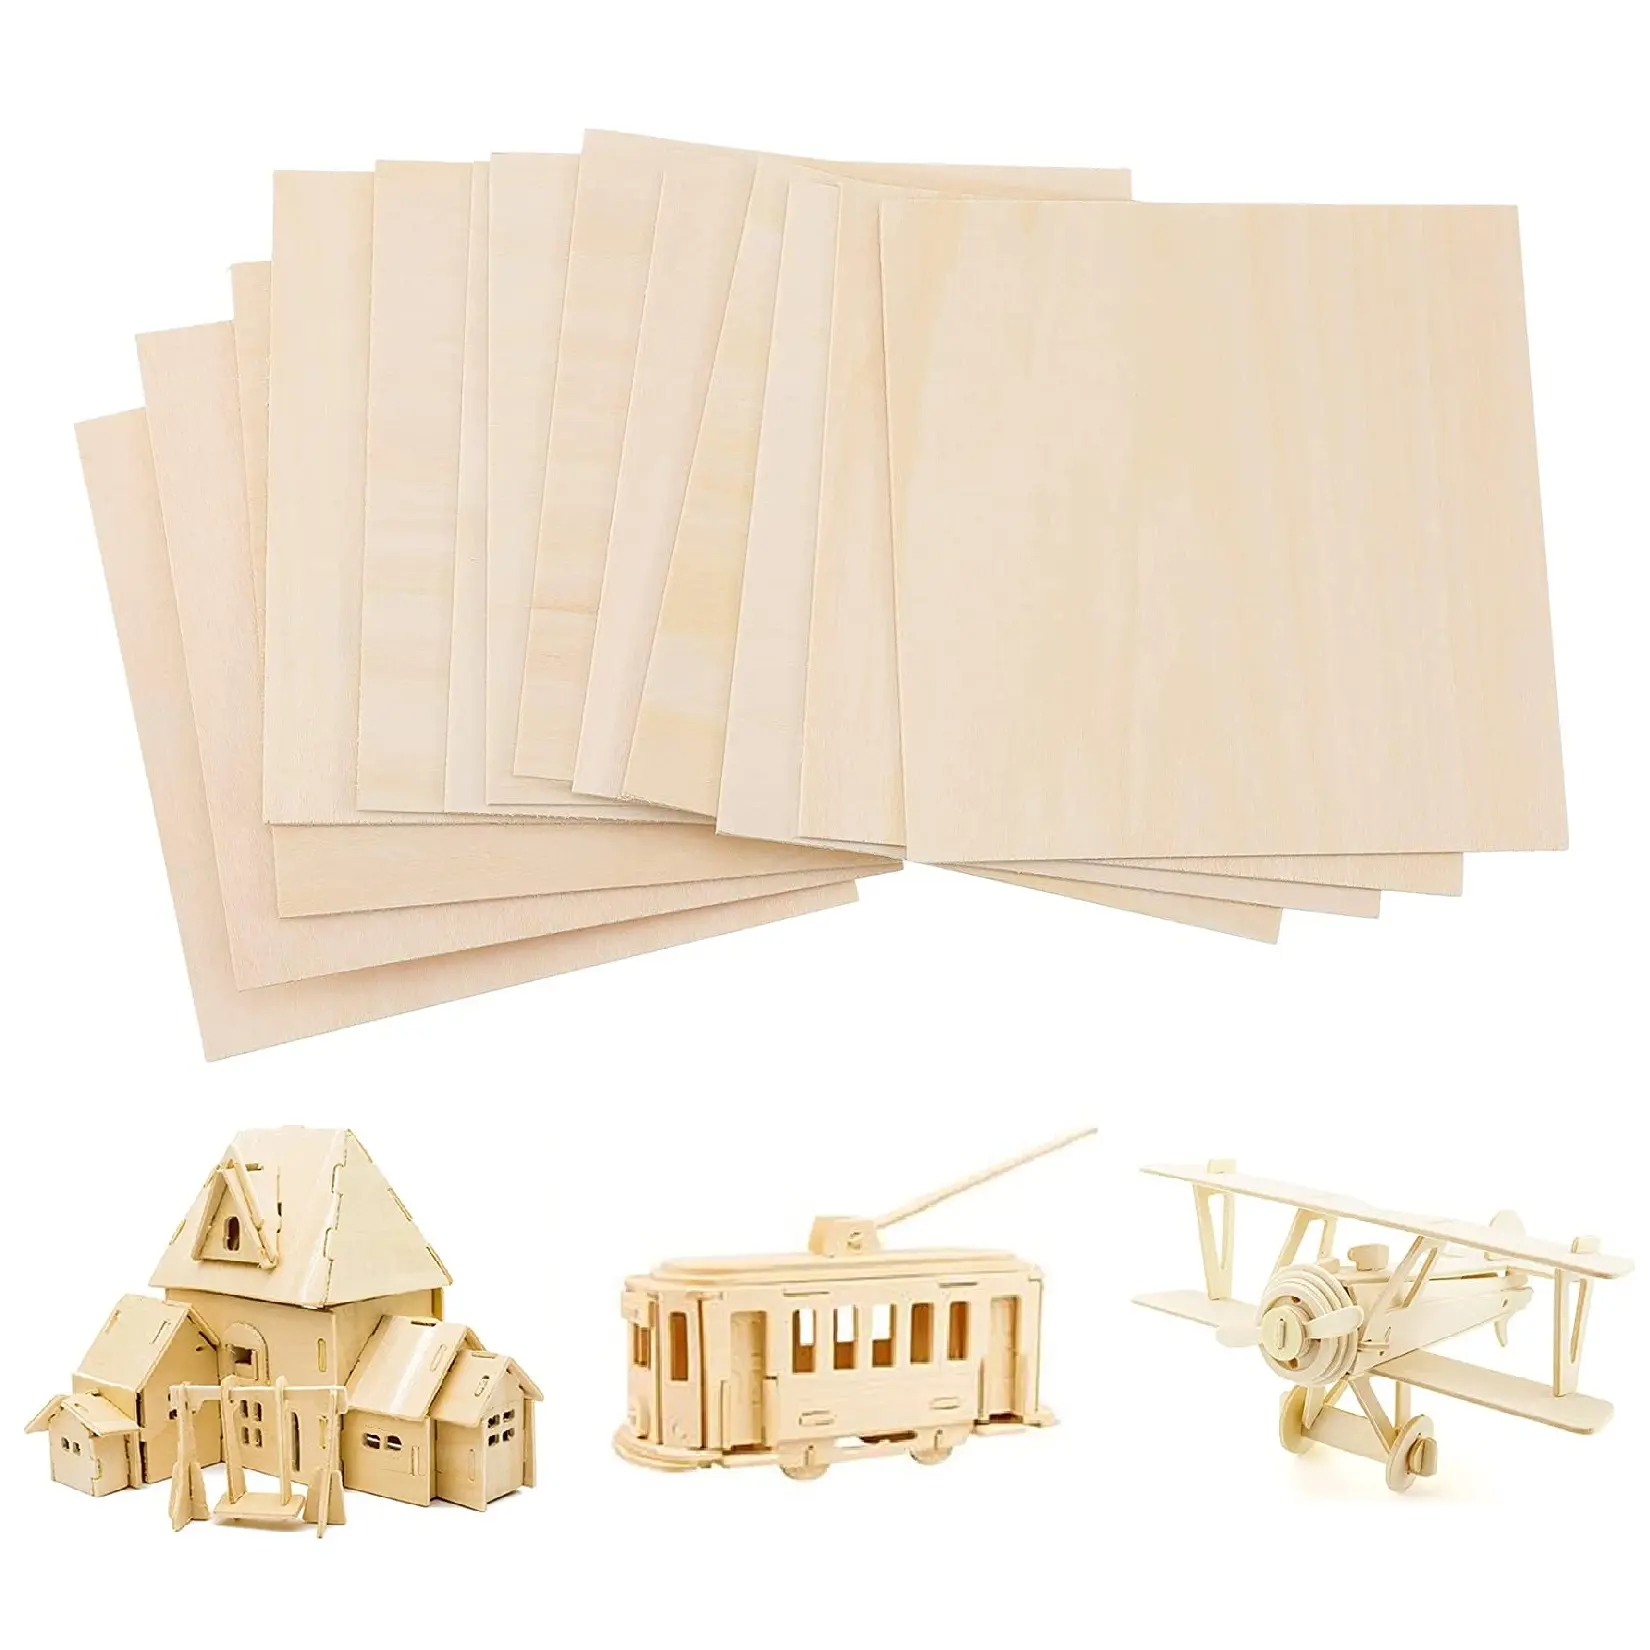 3mm gute Qualität Holz kommerziellen Birke Linde Furnier Sperrholz platte für Spielzeug möbel Handwerk Lasers ch neiden und Stanzen